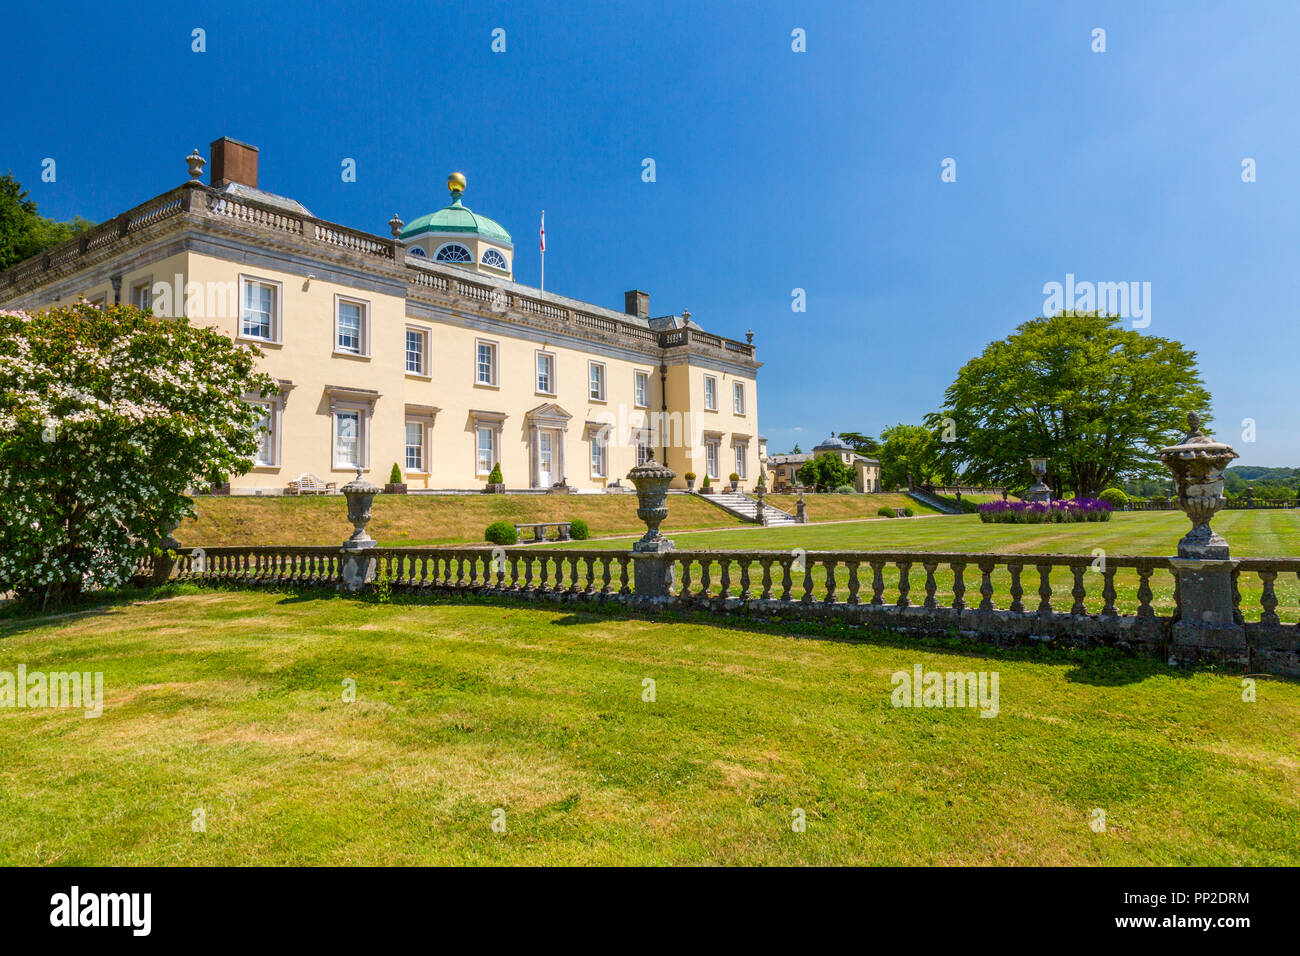 Beeindruckende palladianischen Architektur Castle Hill House und Gärten, in der Nähe von Filleigh, Devon, England, Großbritannien Stockfoto